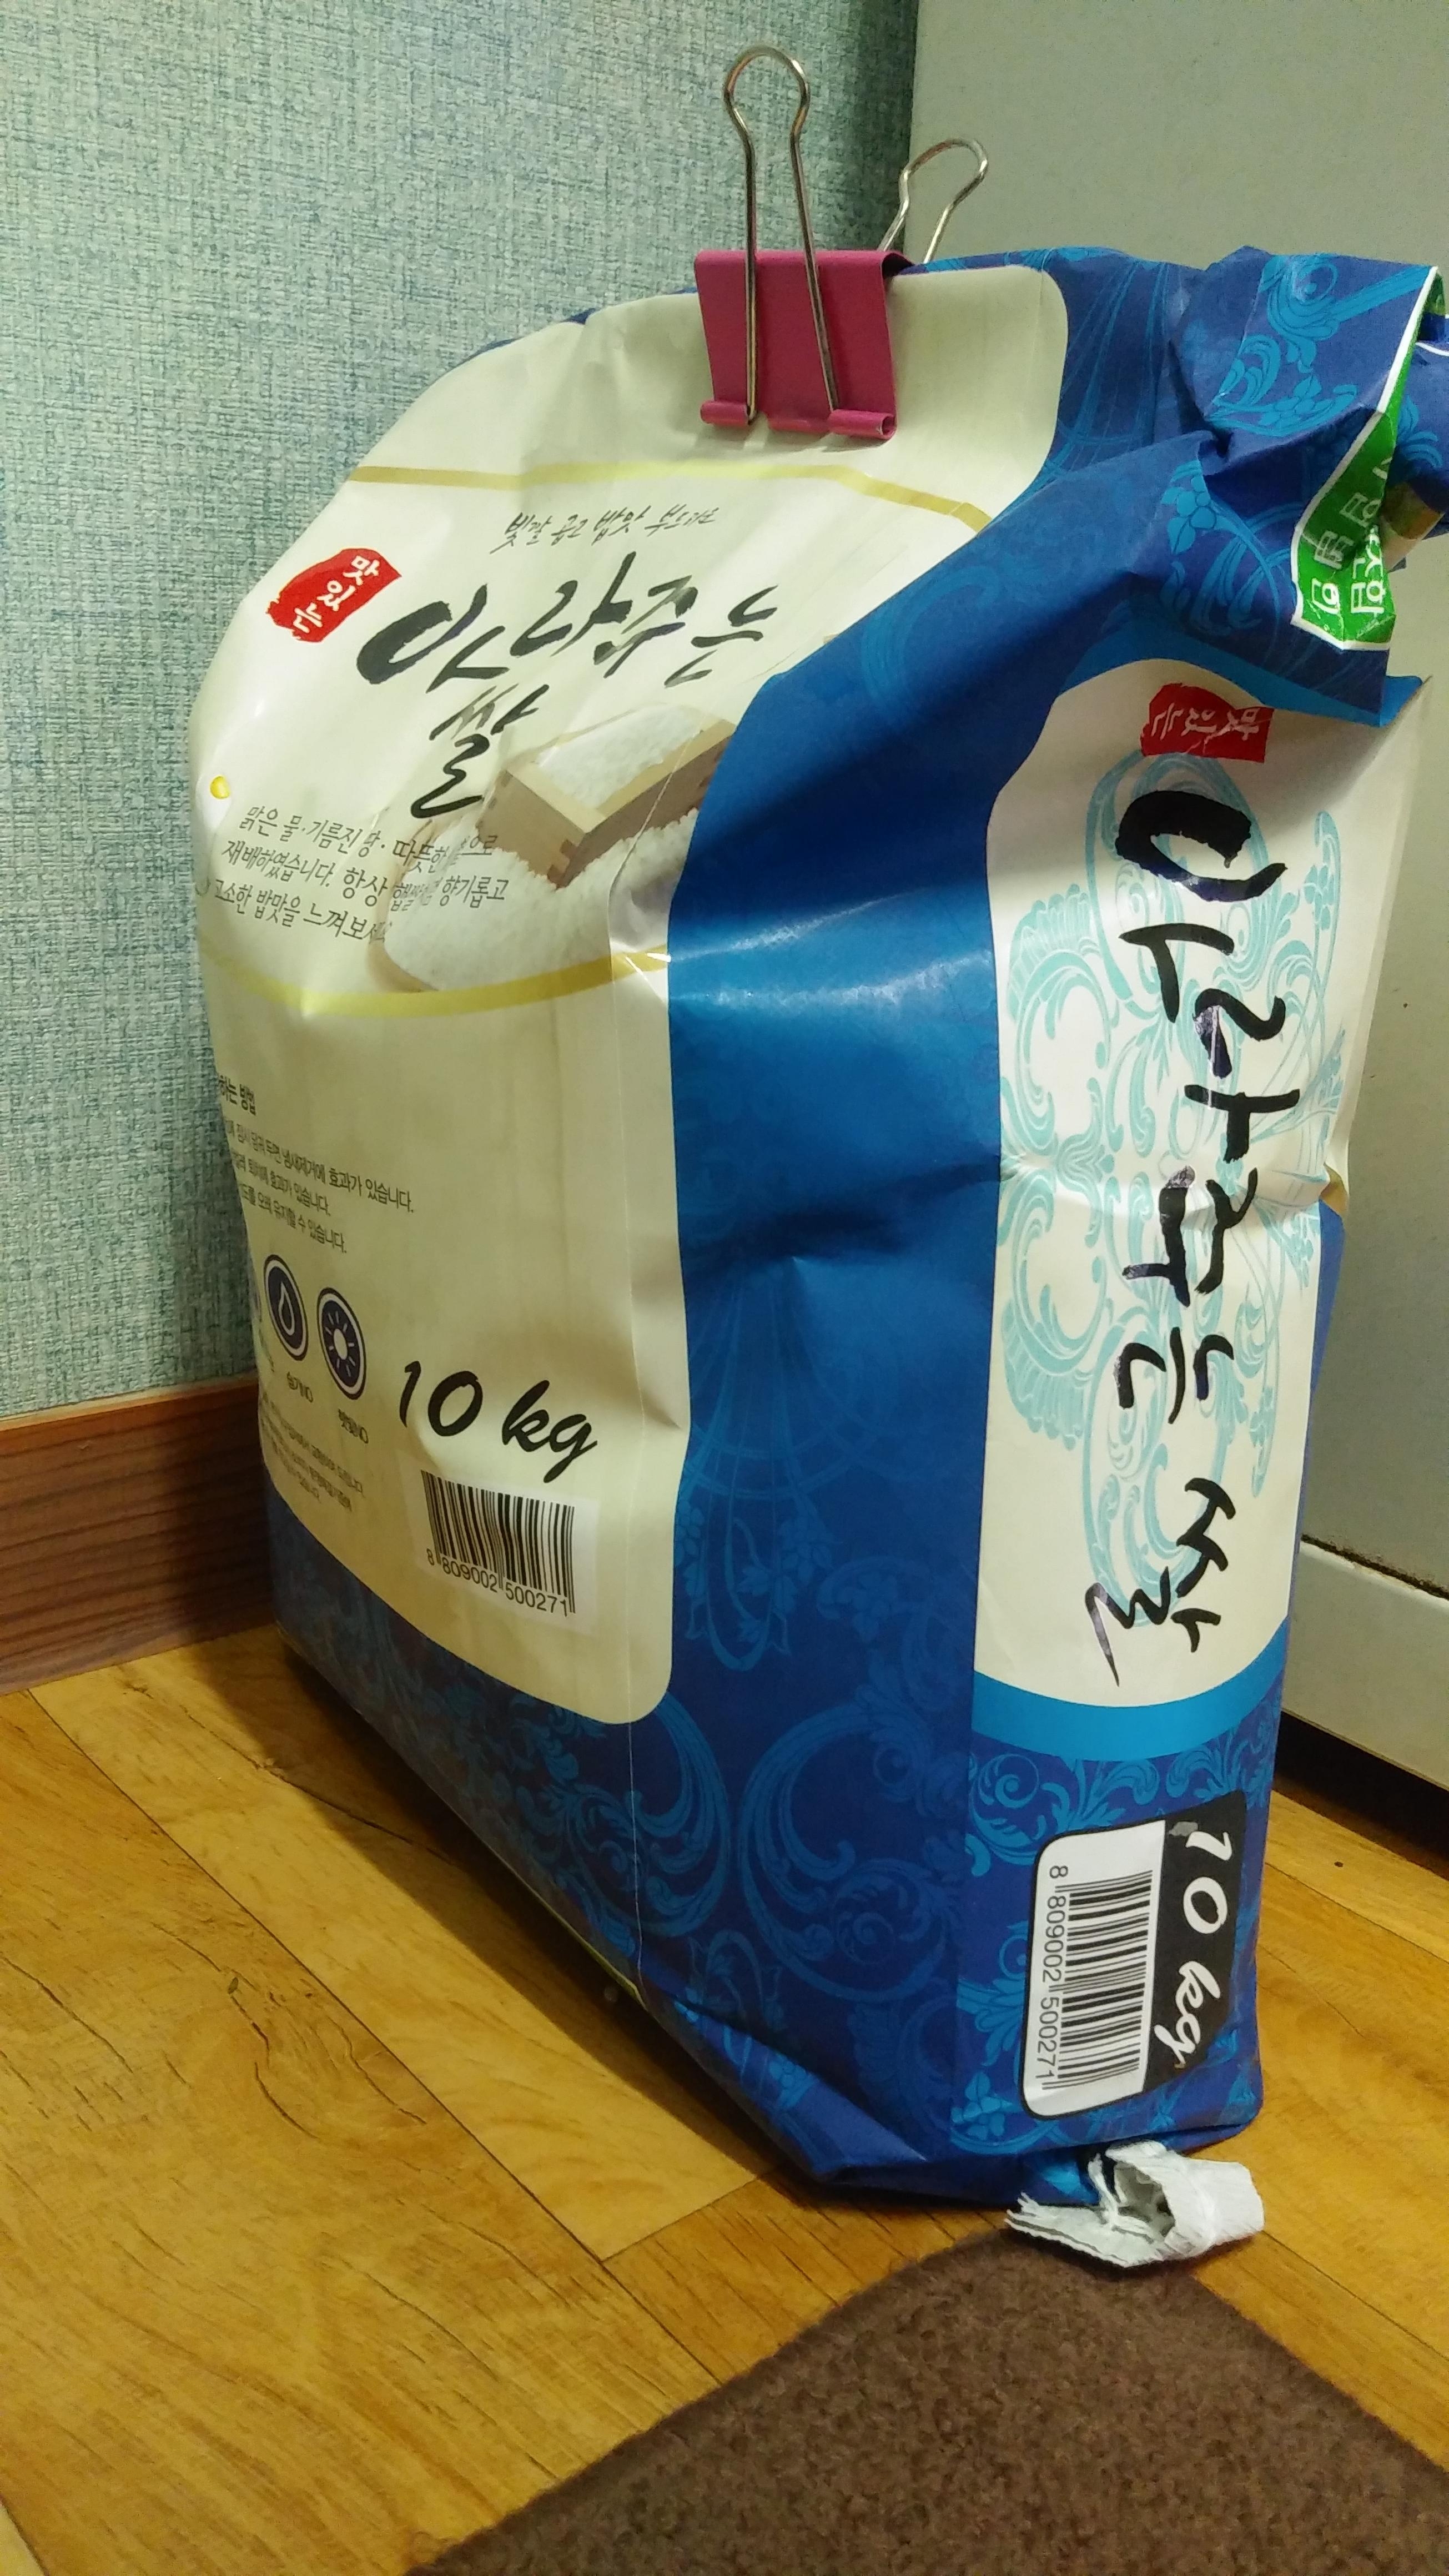 (영암군농협쌀조합) GAP인증시설 23년 아라주는쌀 10kg/20kg